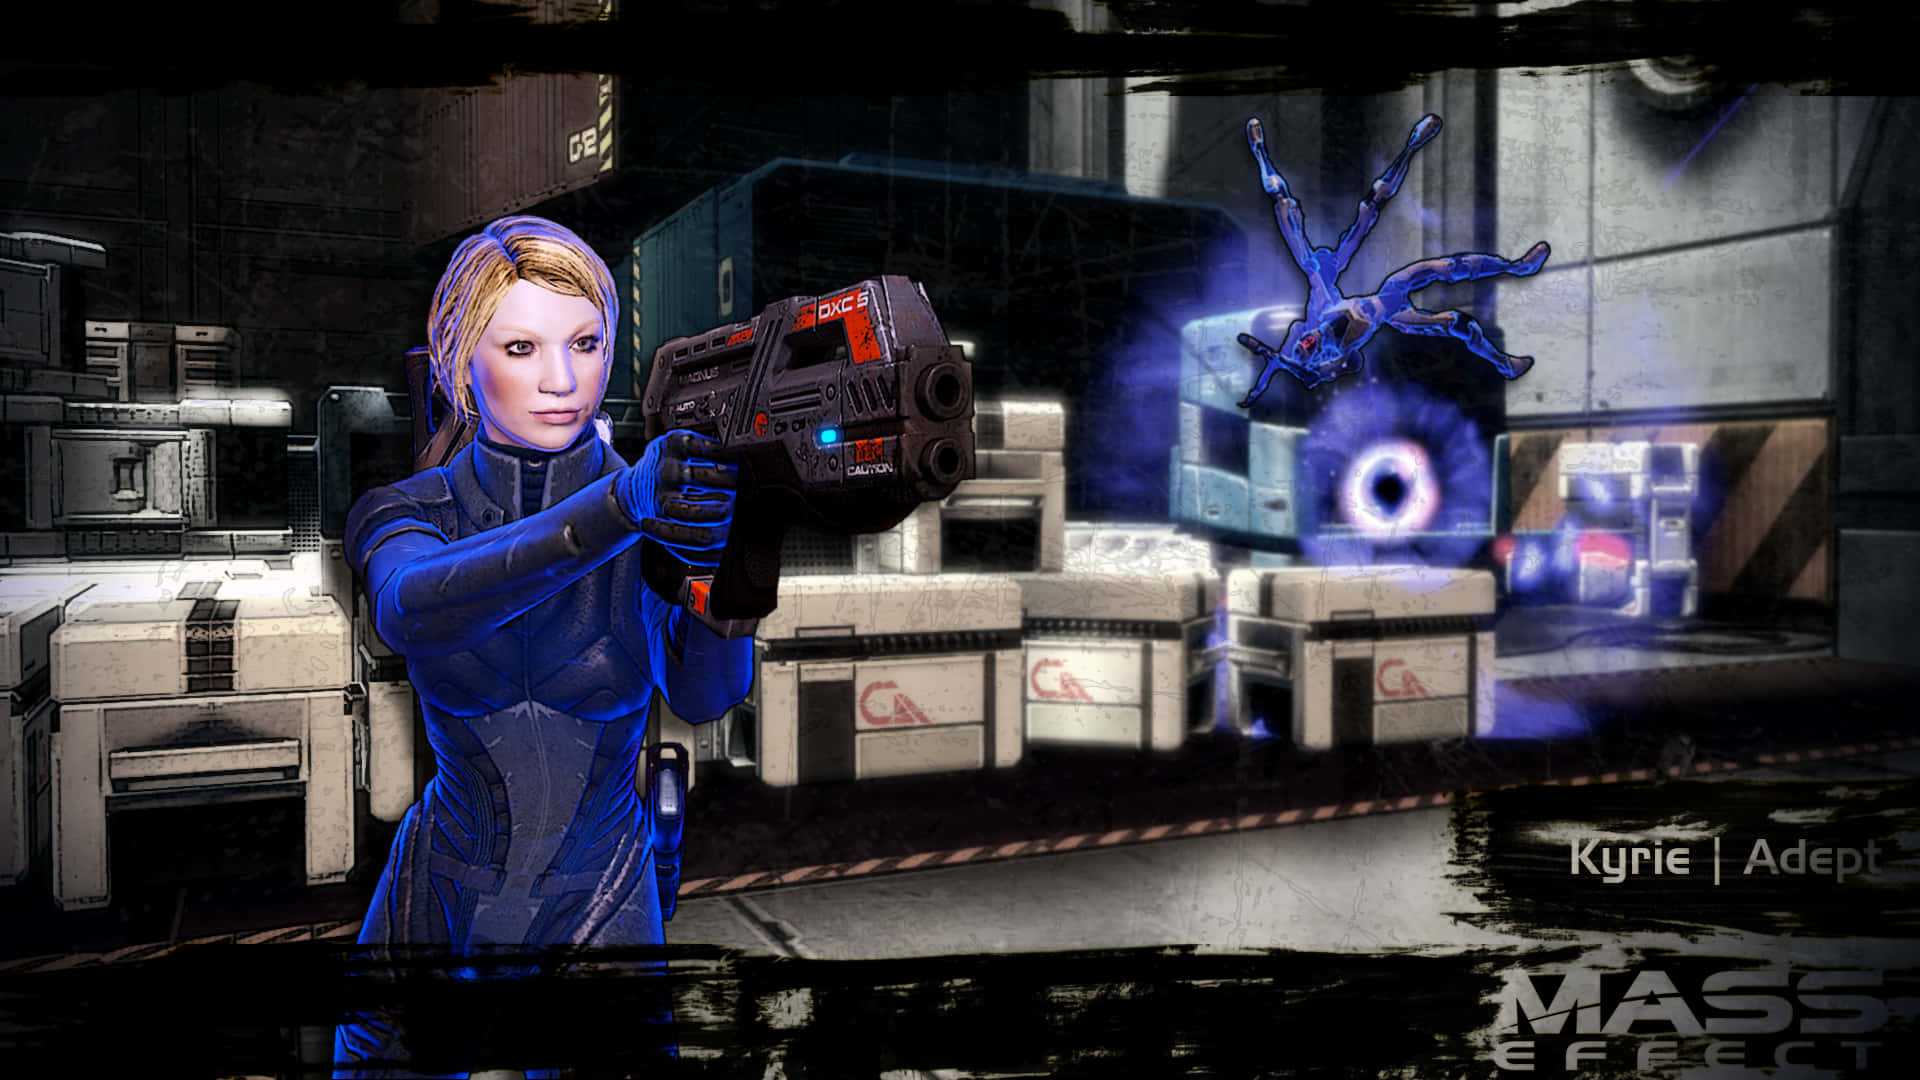 Kyrie,en Adept I Mass Effect 3. Wallpaper